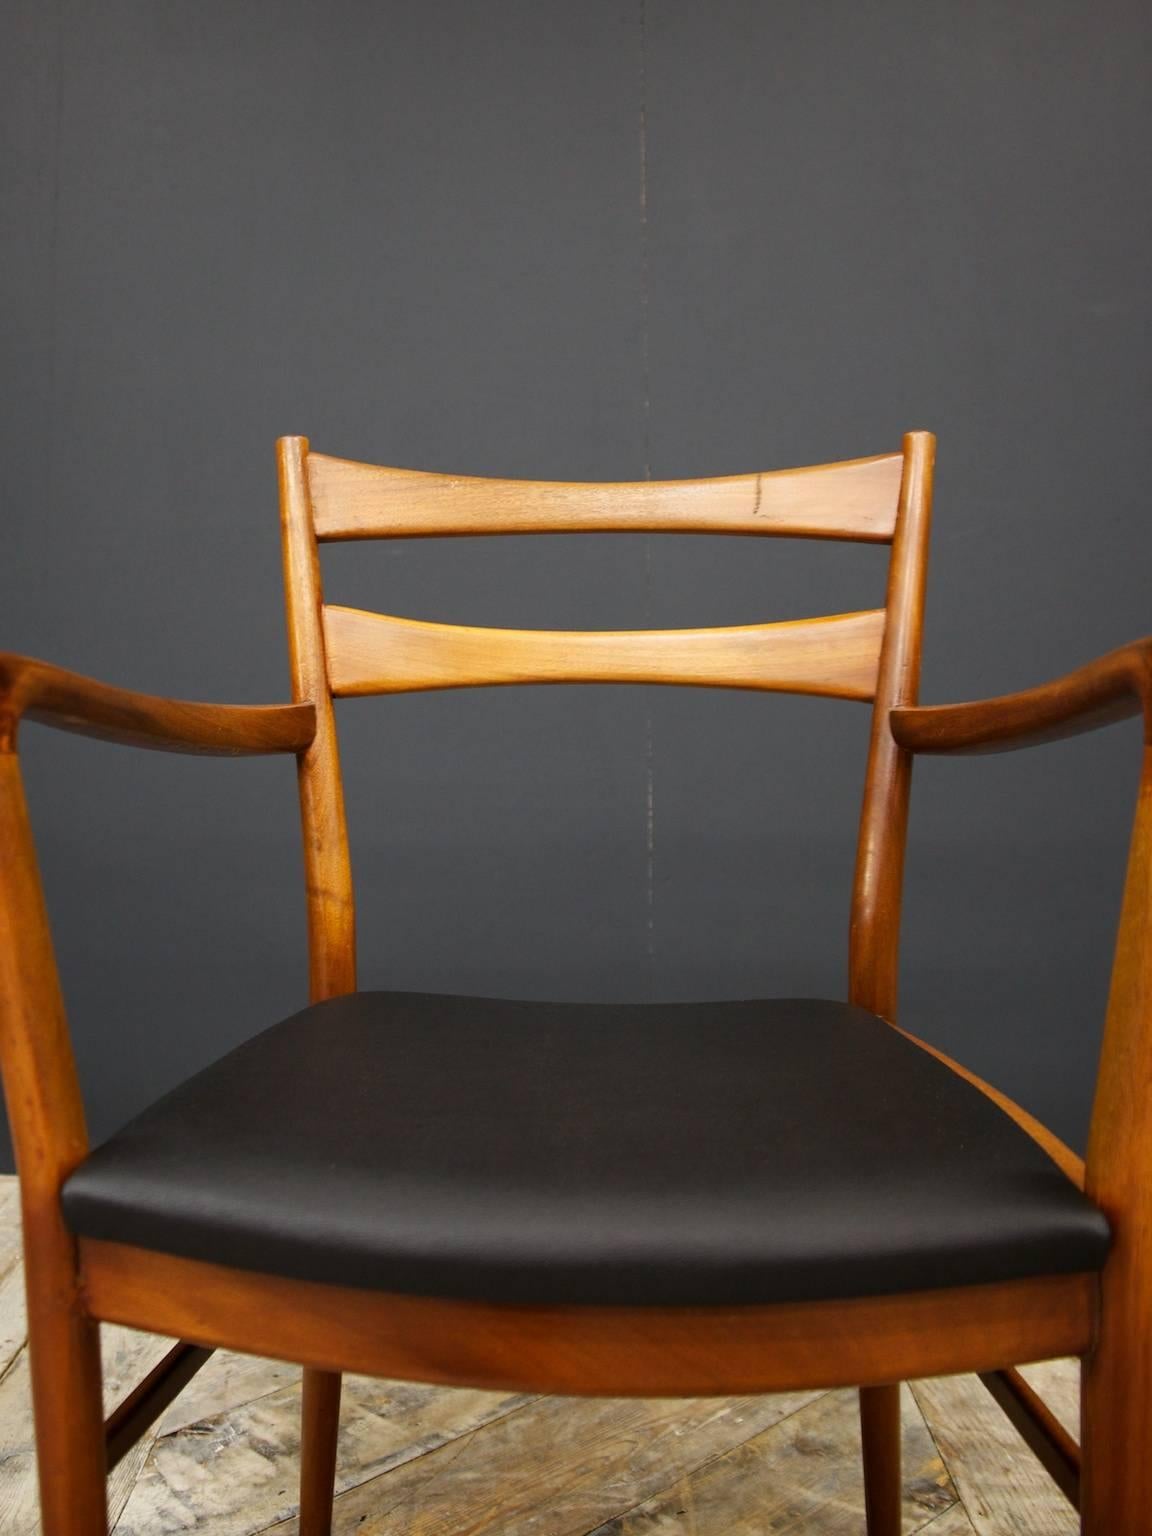 British Beithcraft Chairs